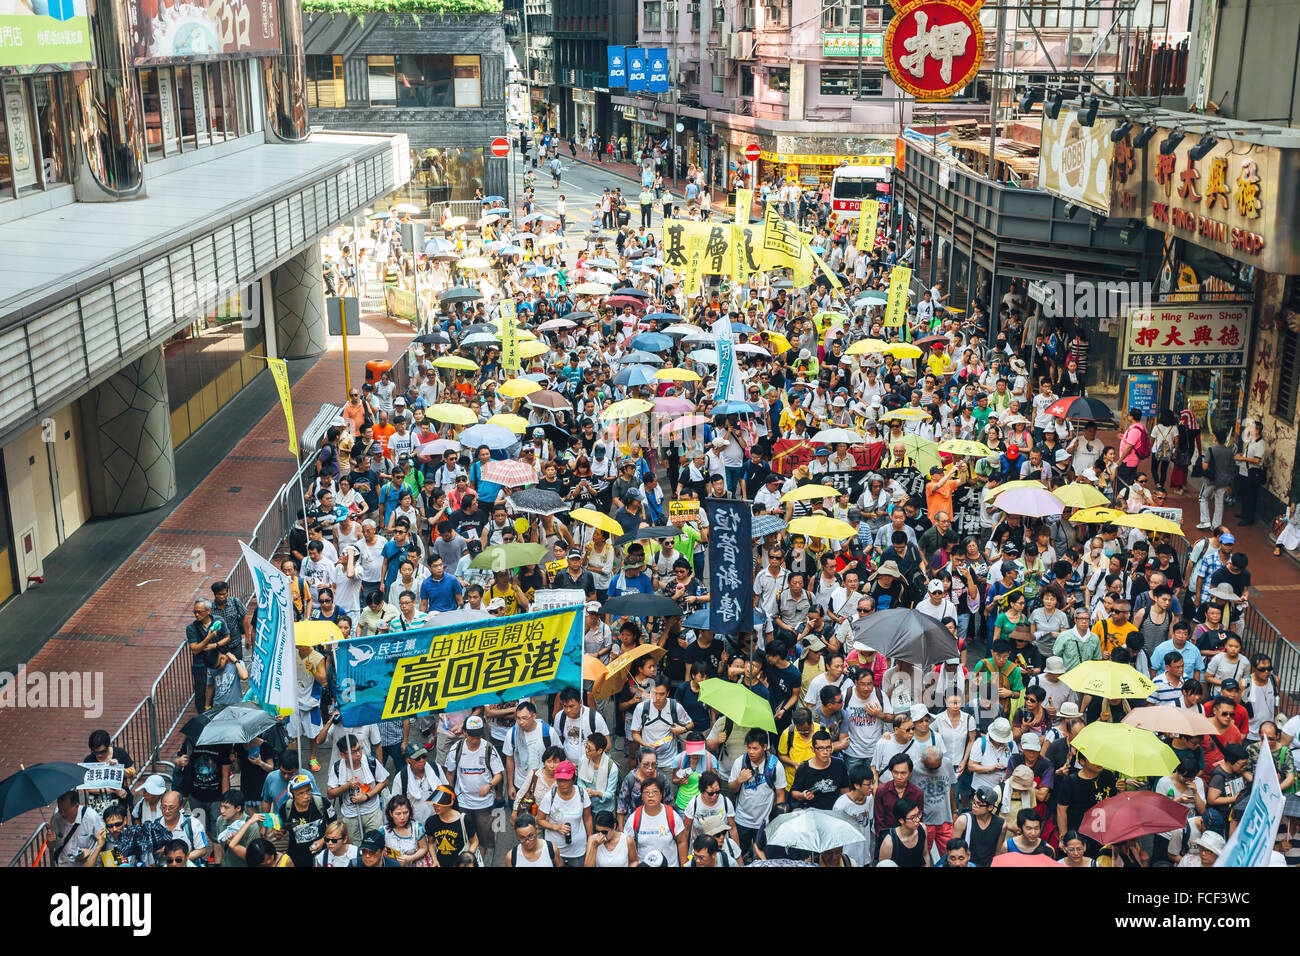 HONG KONG - 1 luglio: la gente di Hong Kong cercano una maggiore democrazia come cresce la frustrazione oltre l'influenza di Pechino il 1 luglio 2015. Foto Stock